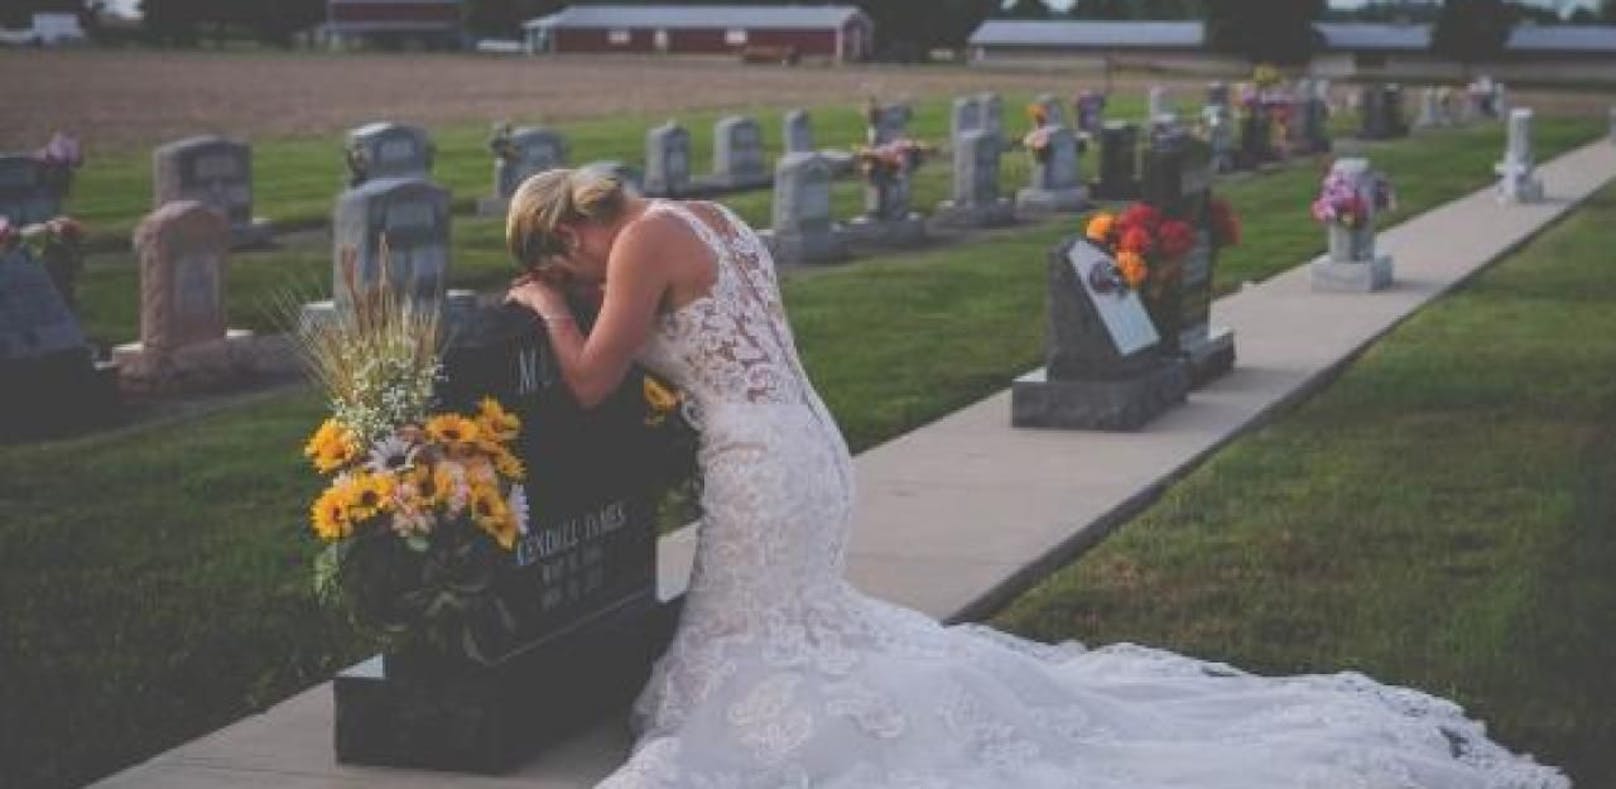 Diese trauernde Braut bewegt die Welt